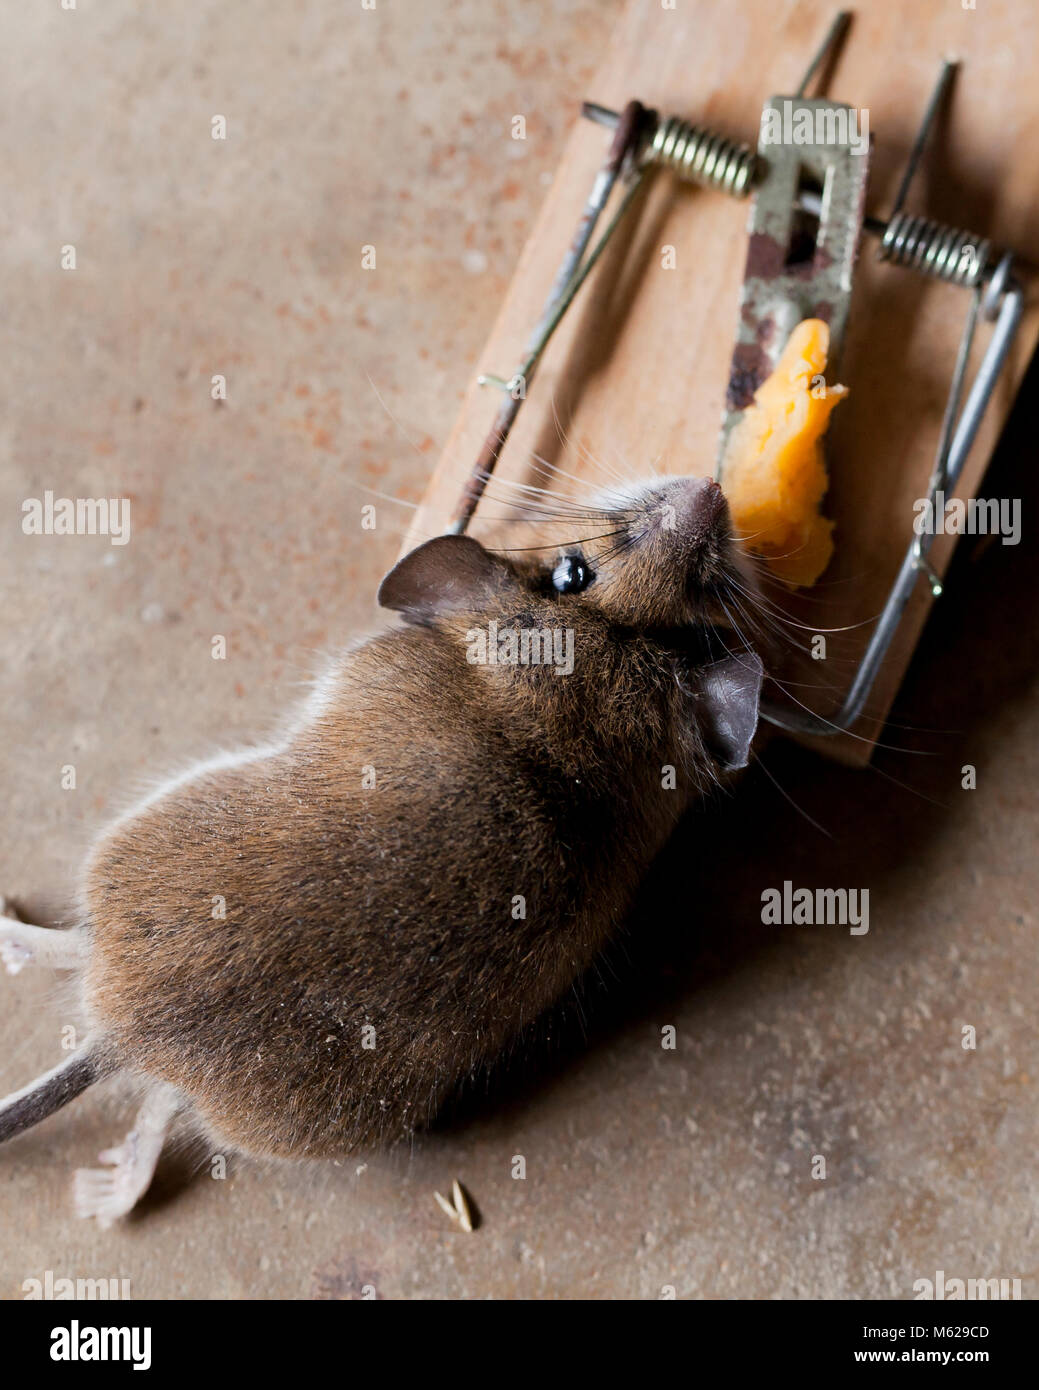 Muertos casa común, ratón (Mus musculus) atrapado en la ratonera - EE.UU. Foto de stock